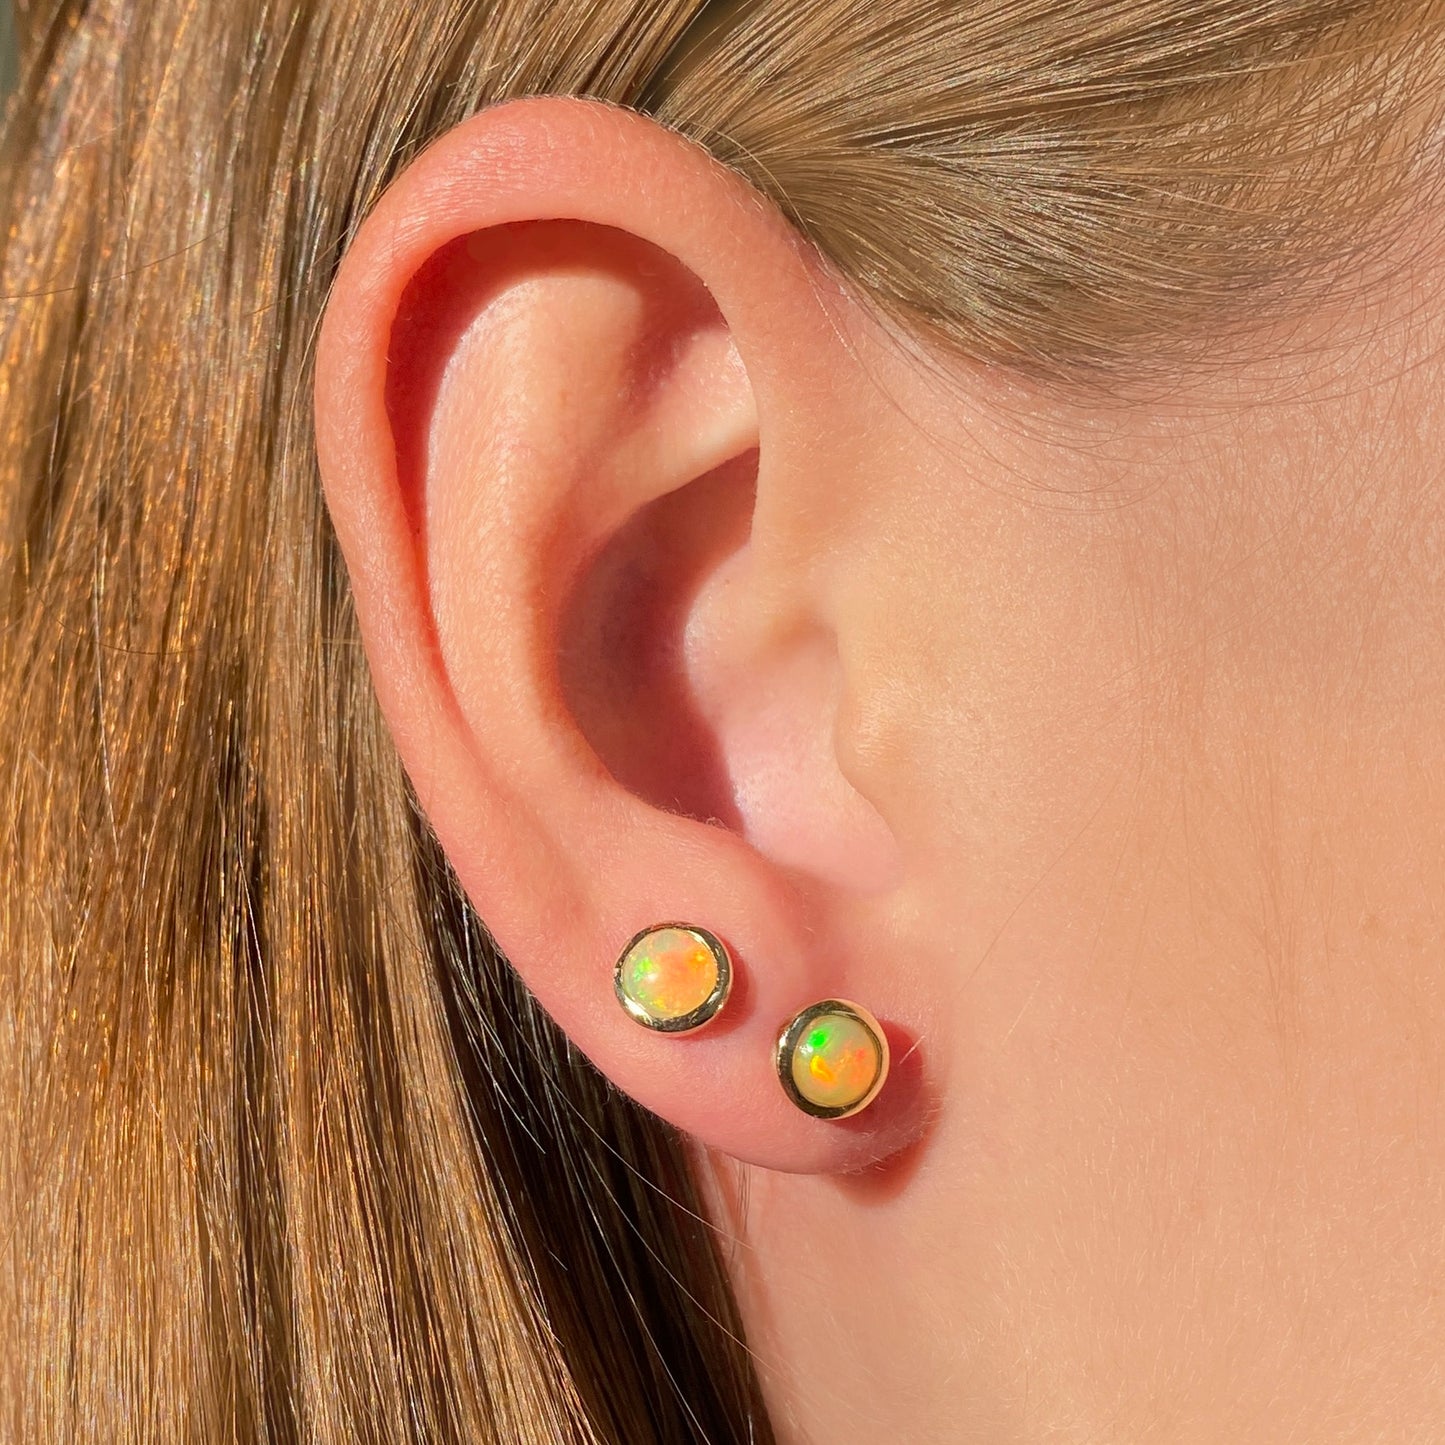 14k gold Ethiopian Opal Stud Earrings styled on a ear